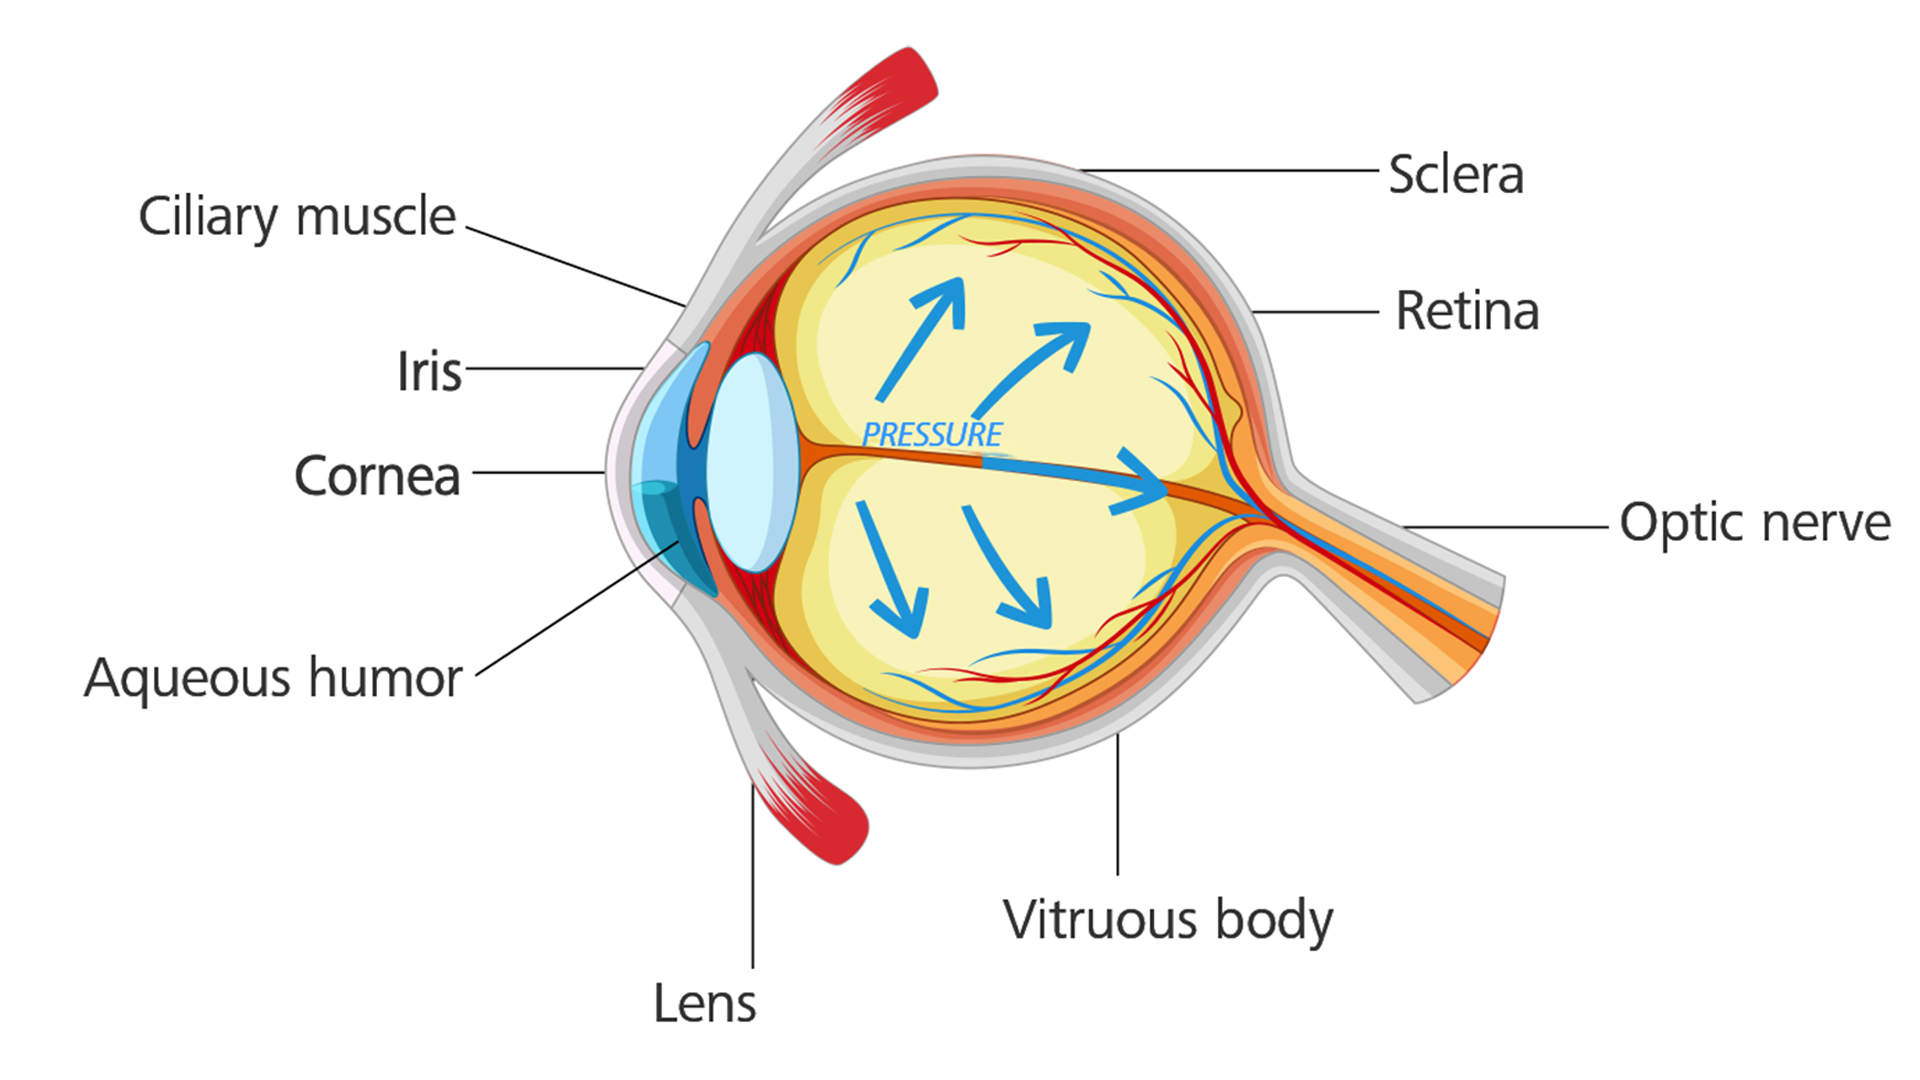 Œil atteint d'un glaucome : la tension oculaire augmente et endommage le nerf optique.